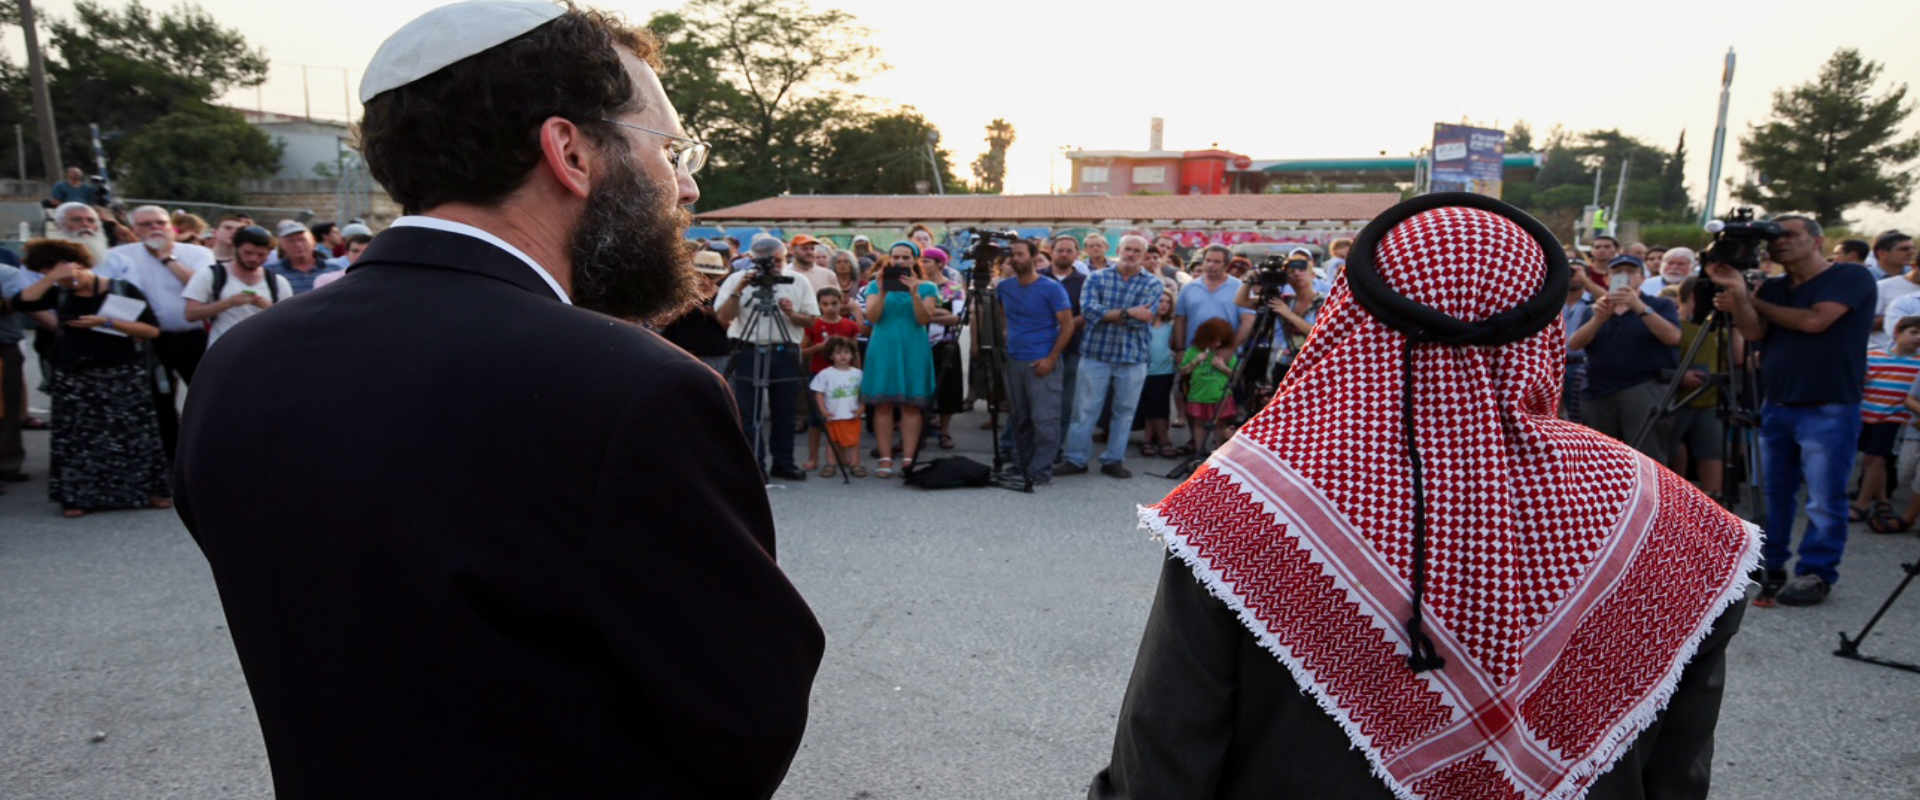 אירוע תפילה משותף של מוסלמים ויהודים בגוש עציון